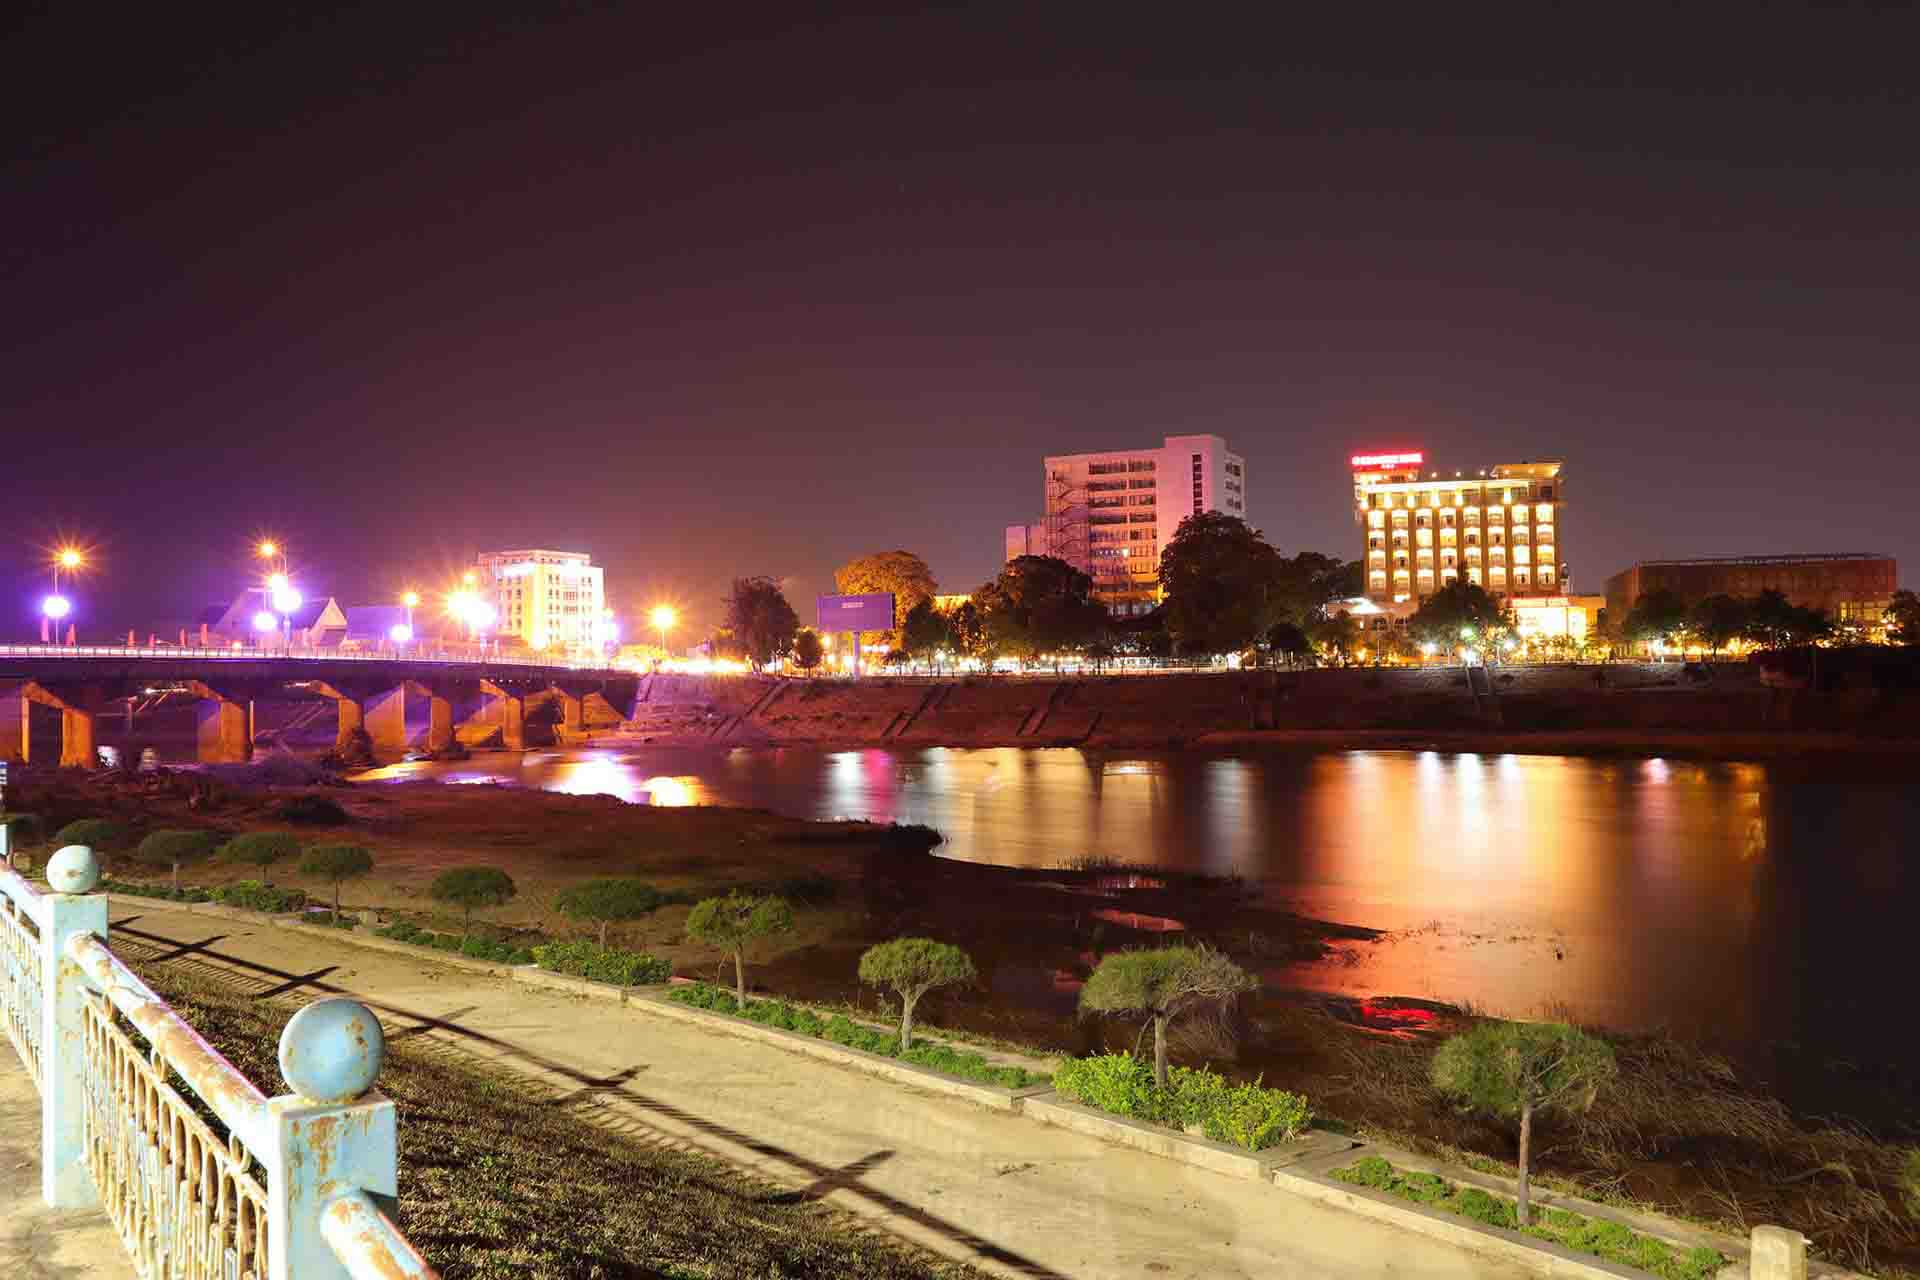 Đêm phố núi Kon Tum 04/2021 - Toàn cảnh bờ sông Đăk Bla thành phố Kon Tum, tỉnh Kon Tum về đêm 